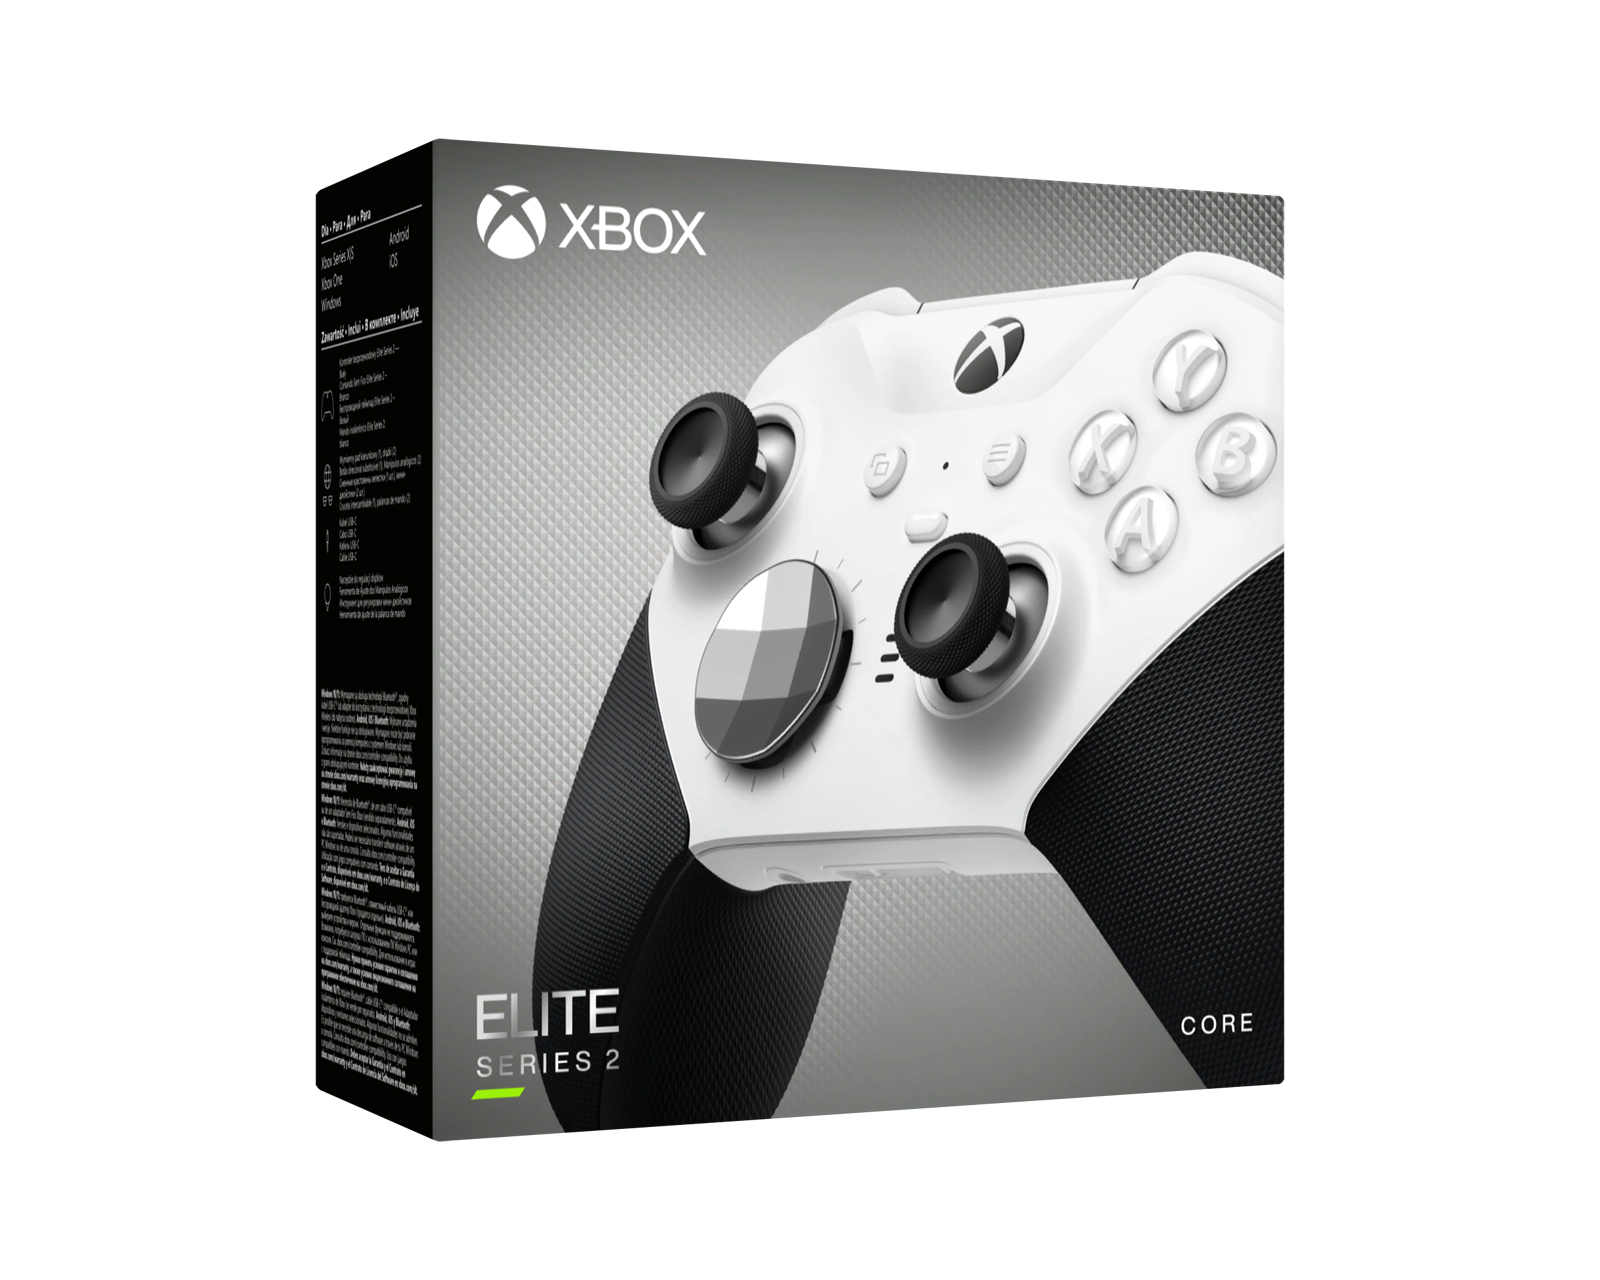 White 2 Controller Core Microsoft Wireless - Edition Series Elite Xbox